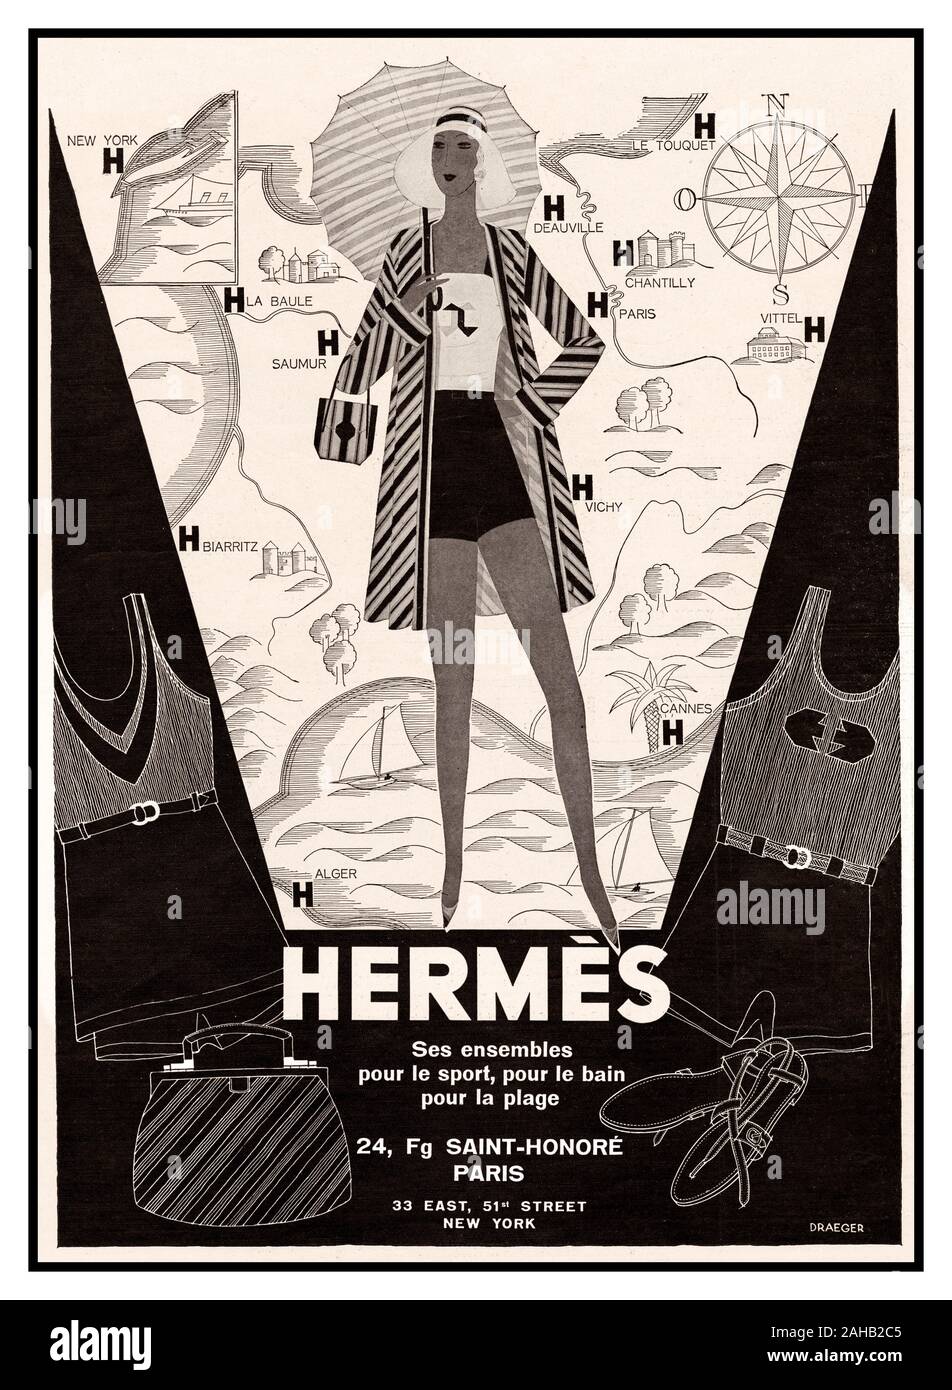 HERMÈS Jahrgang 1930 Seite Abbildung französische Werbung für Hermès Luxus sportswear Kleidung auf einer Karte von geeigneten Ferienziele überlagert - alle Standorte mit Hermès Geschäfte (gekennzeichnet durch einen fetten Buchstaben "H"). Frankreich L'Illustration Magazine Veröffentlichung, 7. Juni 1930 in Paris New York... Stockfoto